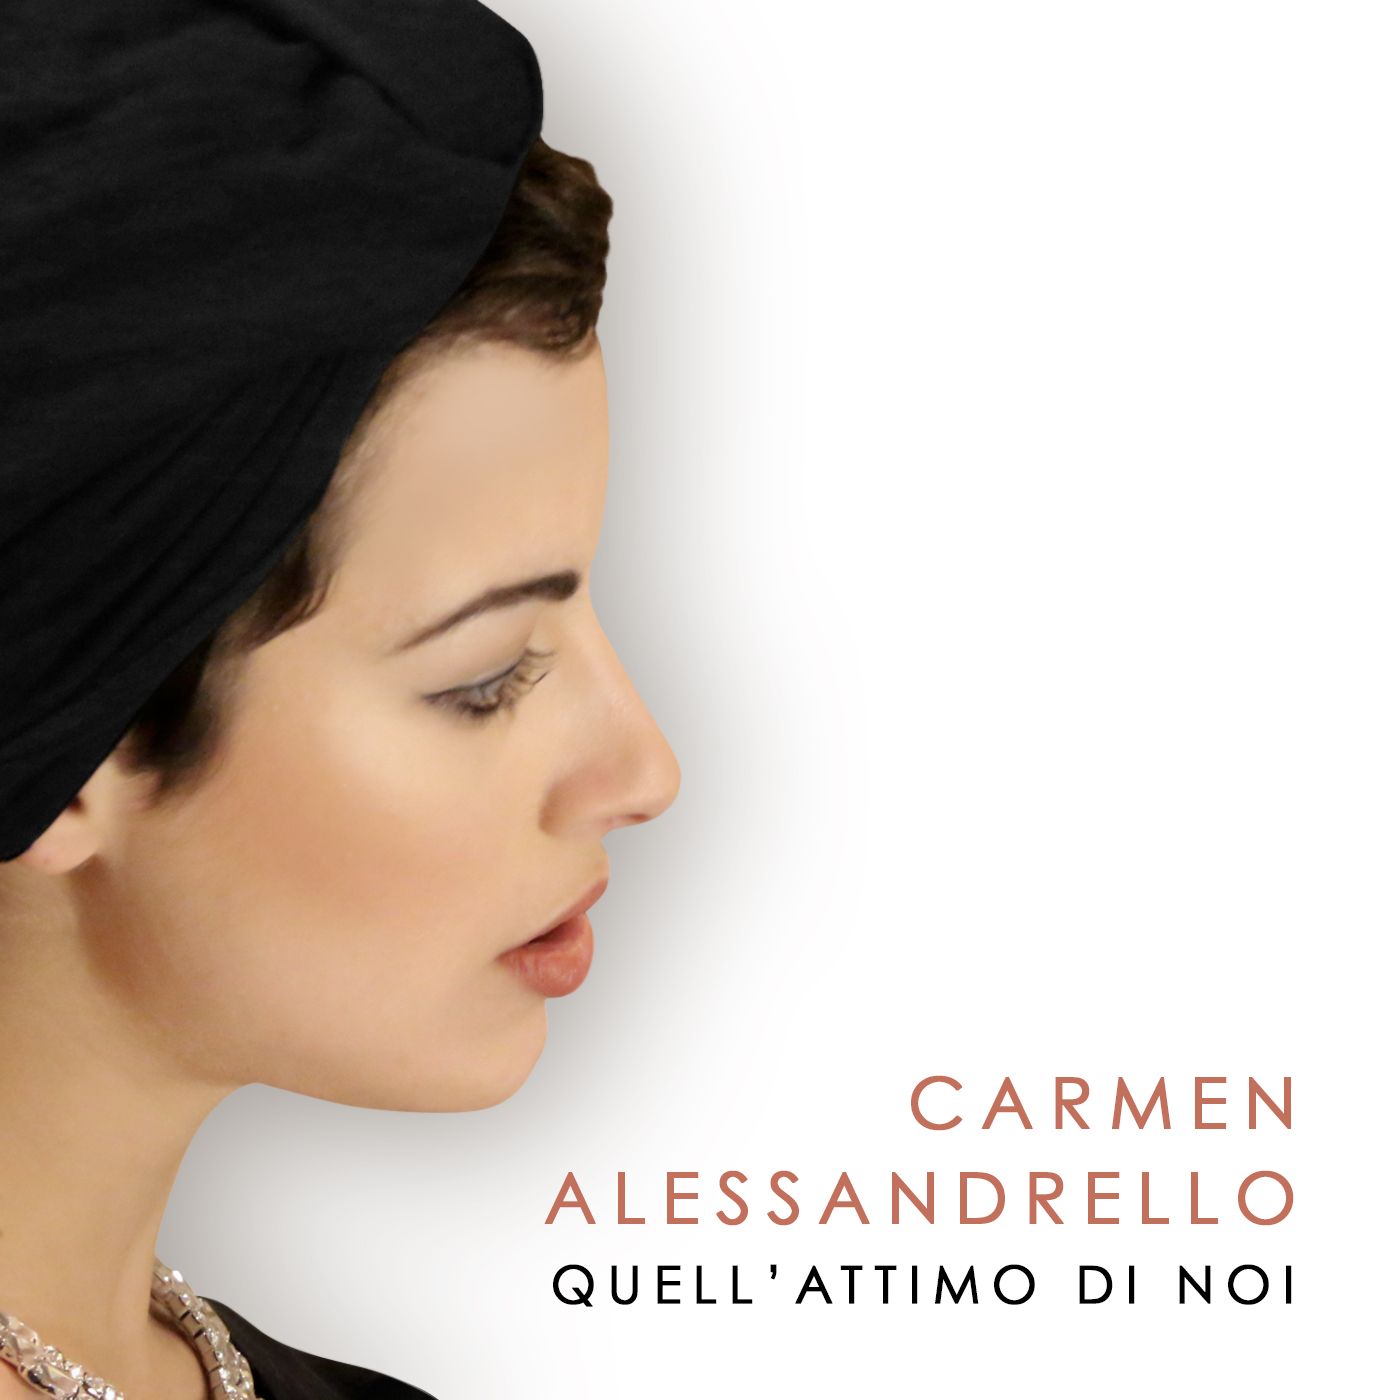 Carmen Alessandrello